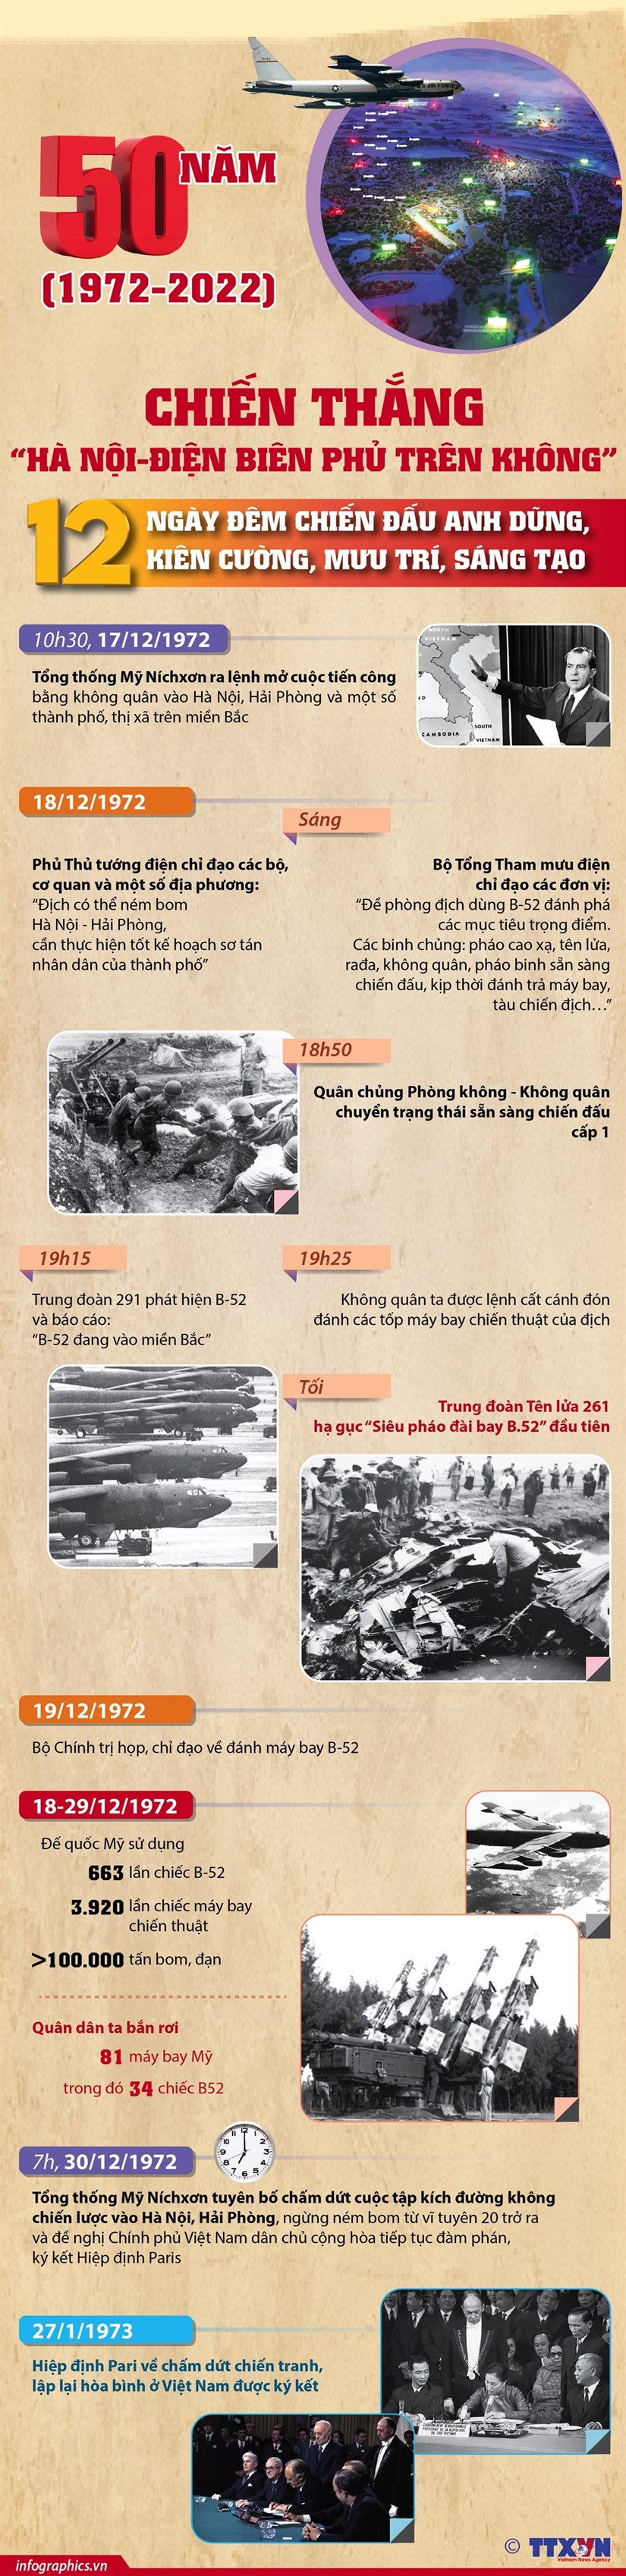 12 ngày đêm chiến đấu làm nên chiến thắng Điện Biên Phủ trên không - Ảnh 1.